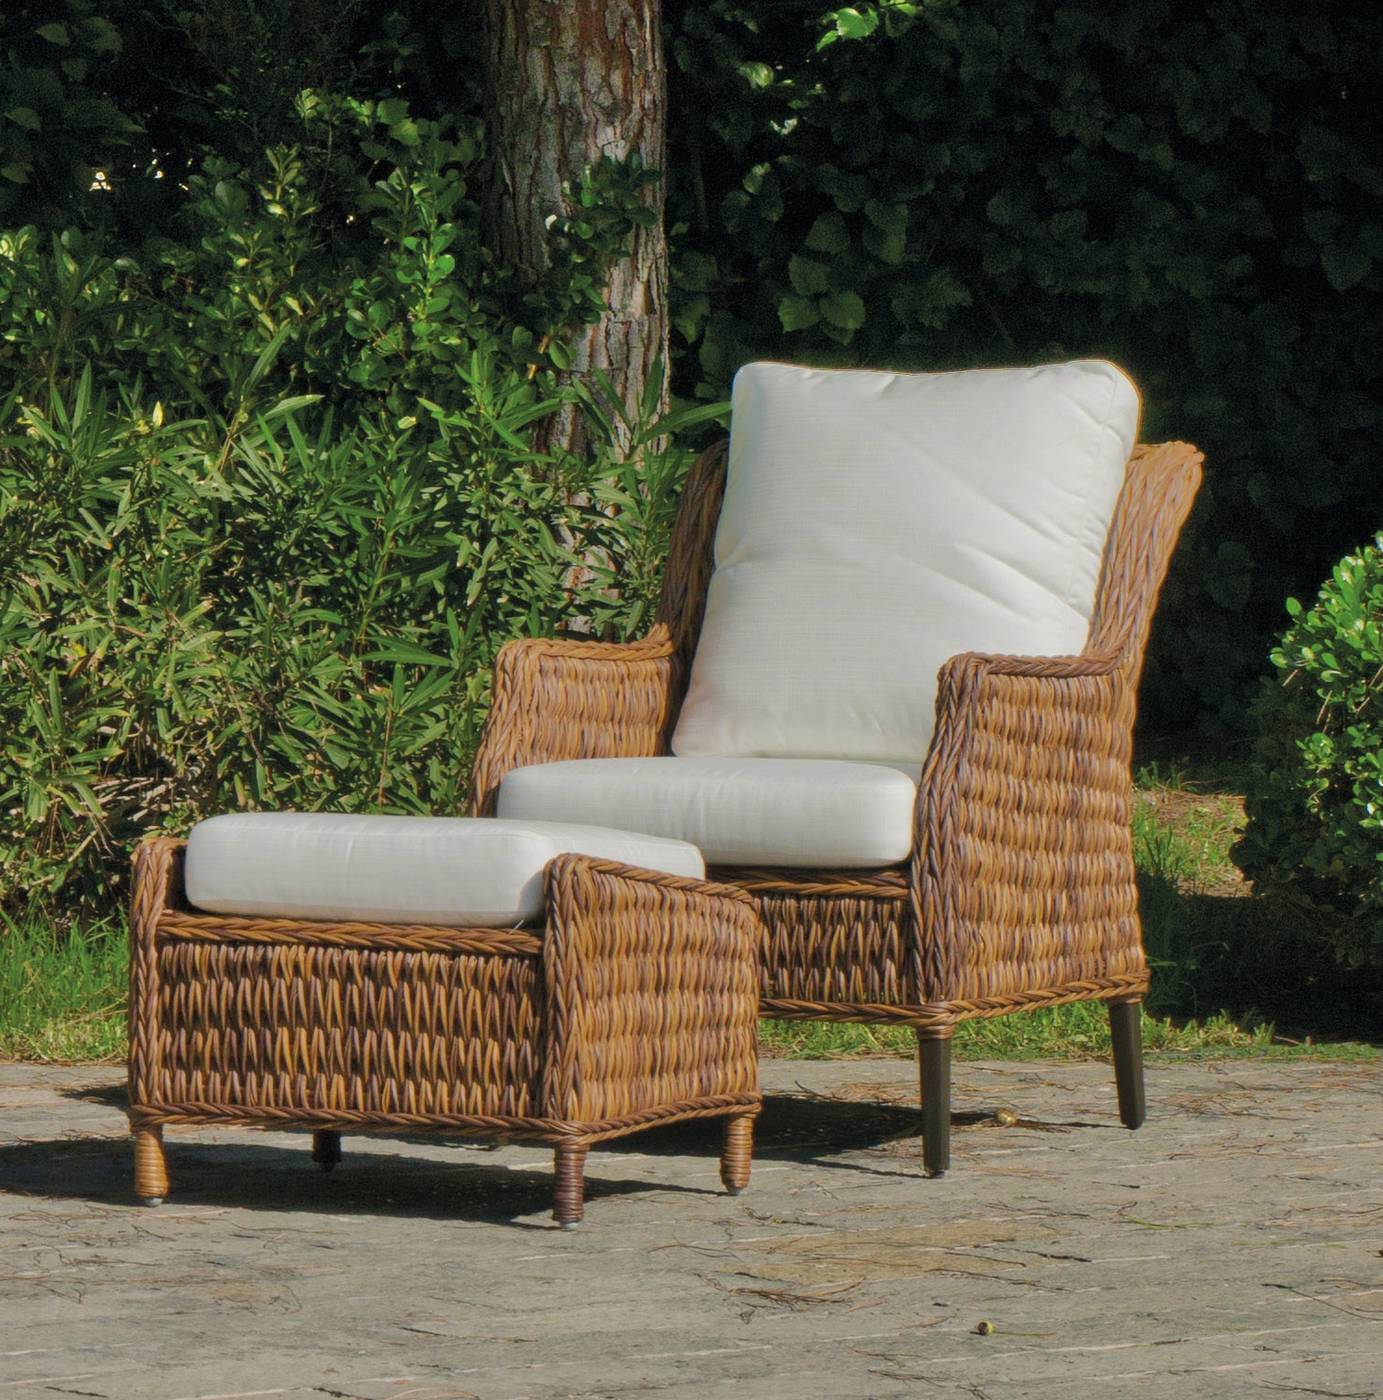 Set Médula Luxe Panama-8 - Conjunto de médula sintética lujo para jardín. Formado por: 1 sofá de 3 plazas + 2 sillones + 1 mesa de centro + cojines